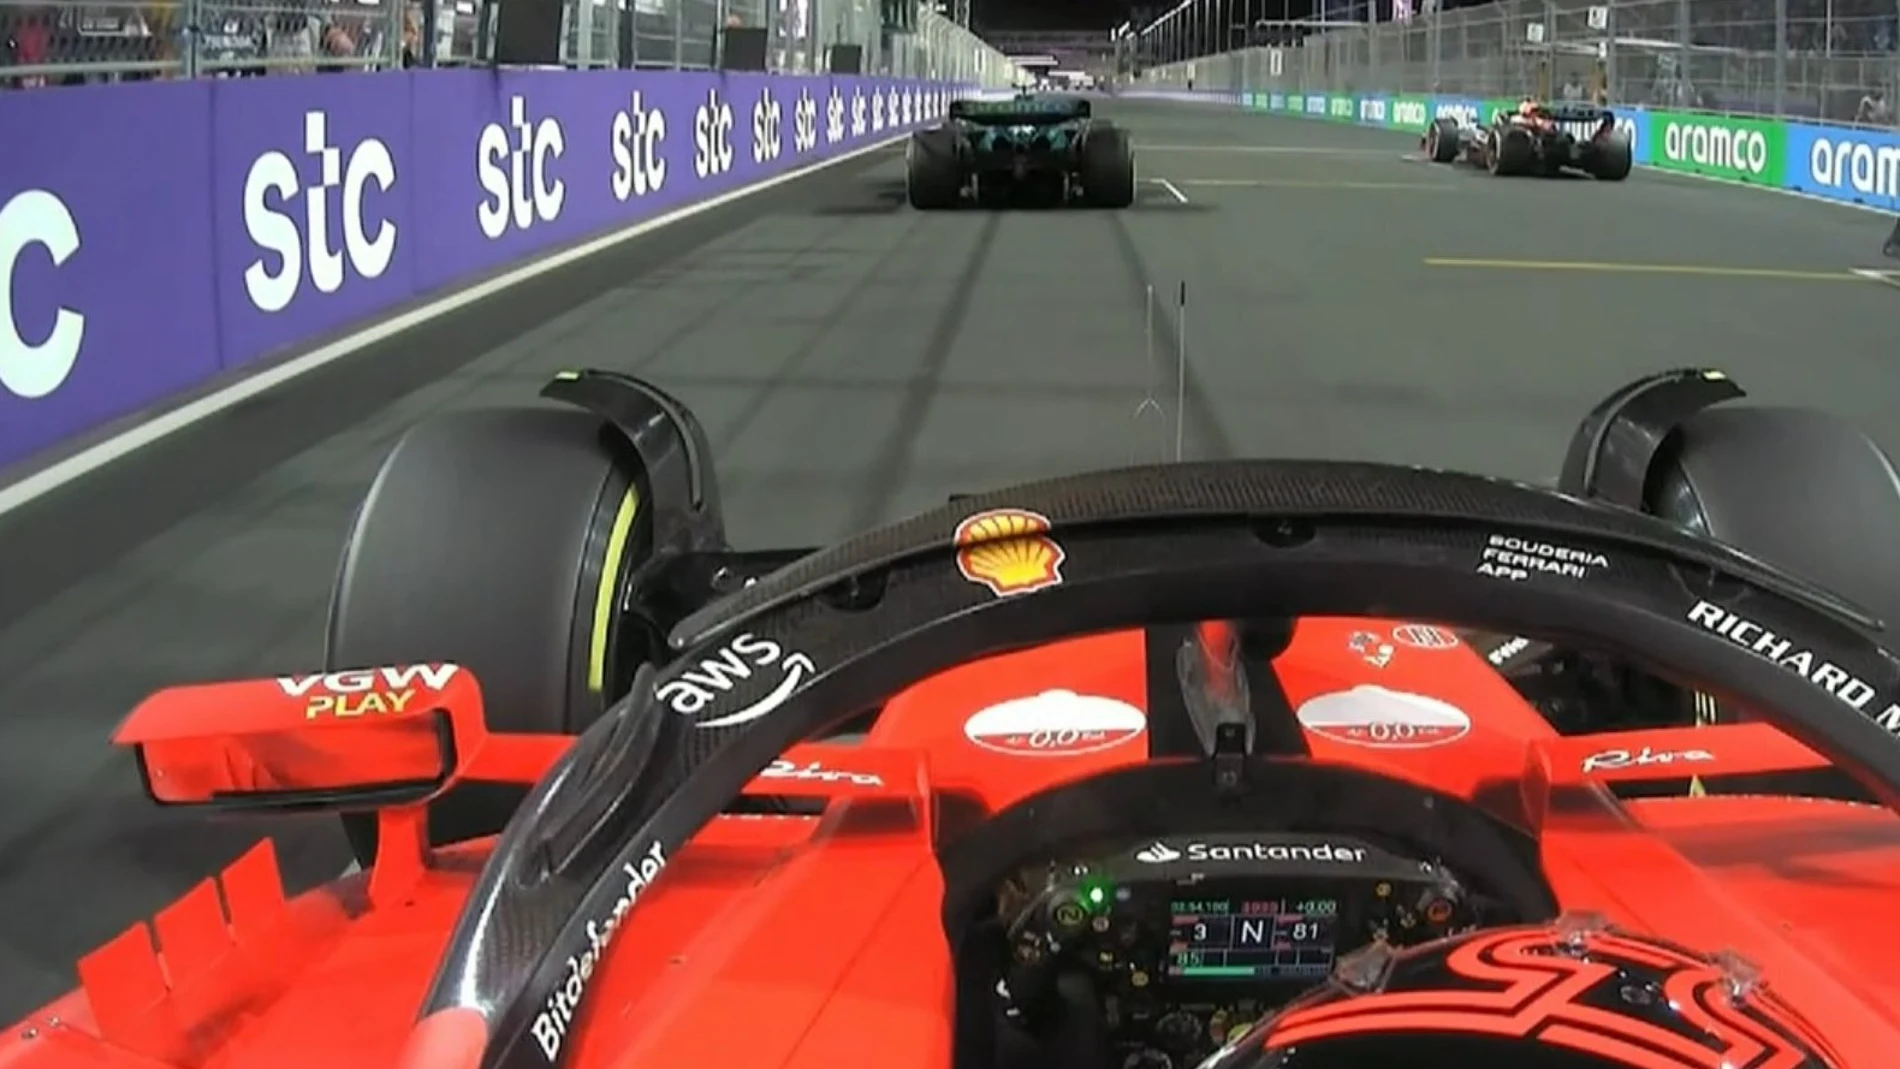 La acción en laque fue sancionado Alonso, vista desde el coche de Sainz.